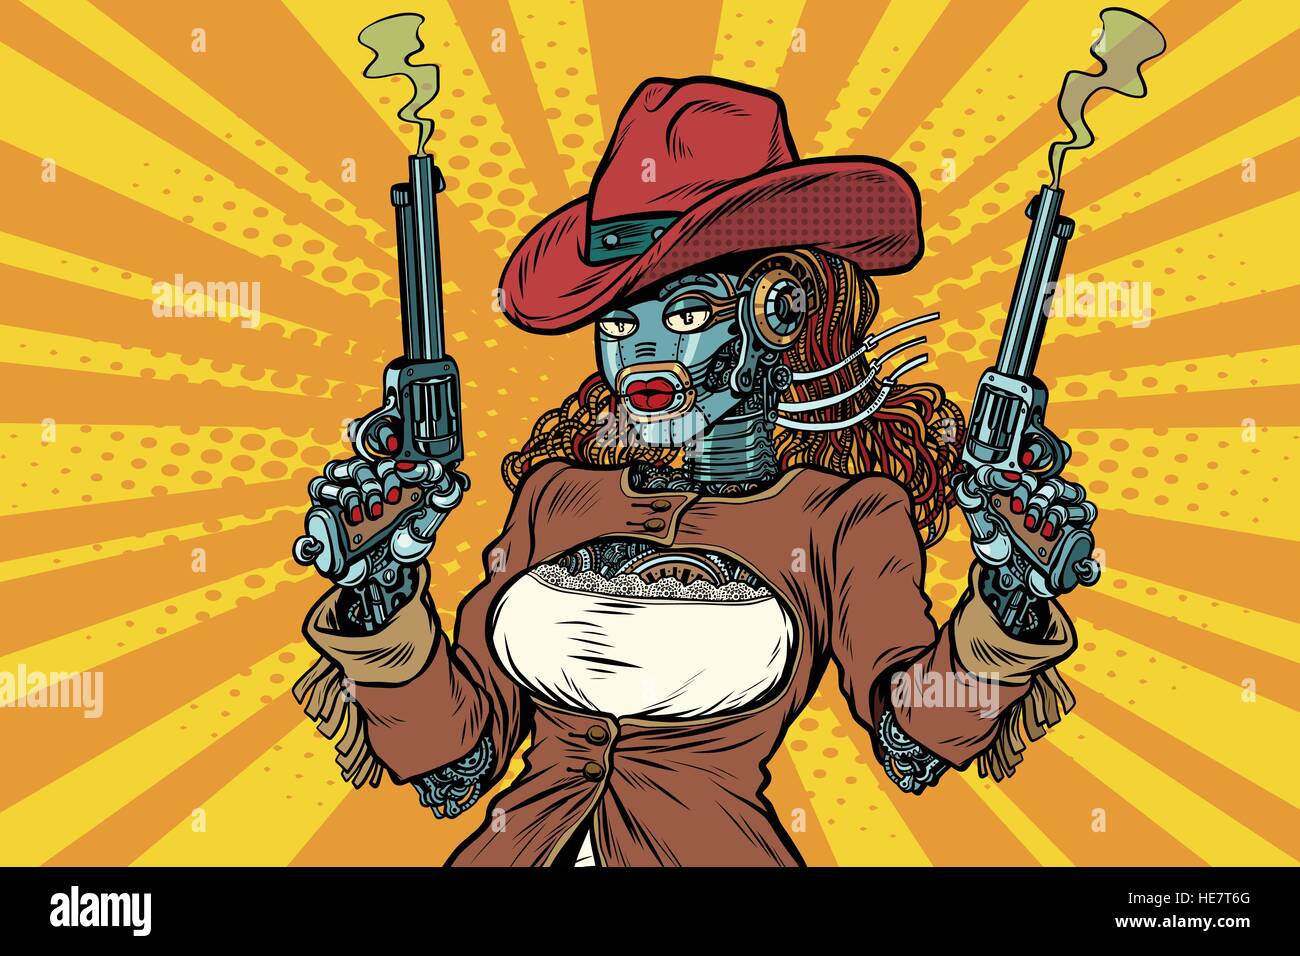 Robot donna gangster steampunk selvaggio West Illustrazione Vettoriale